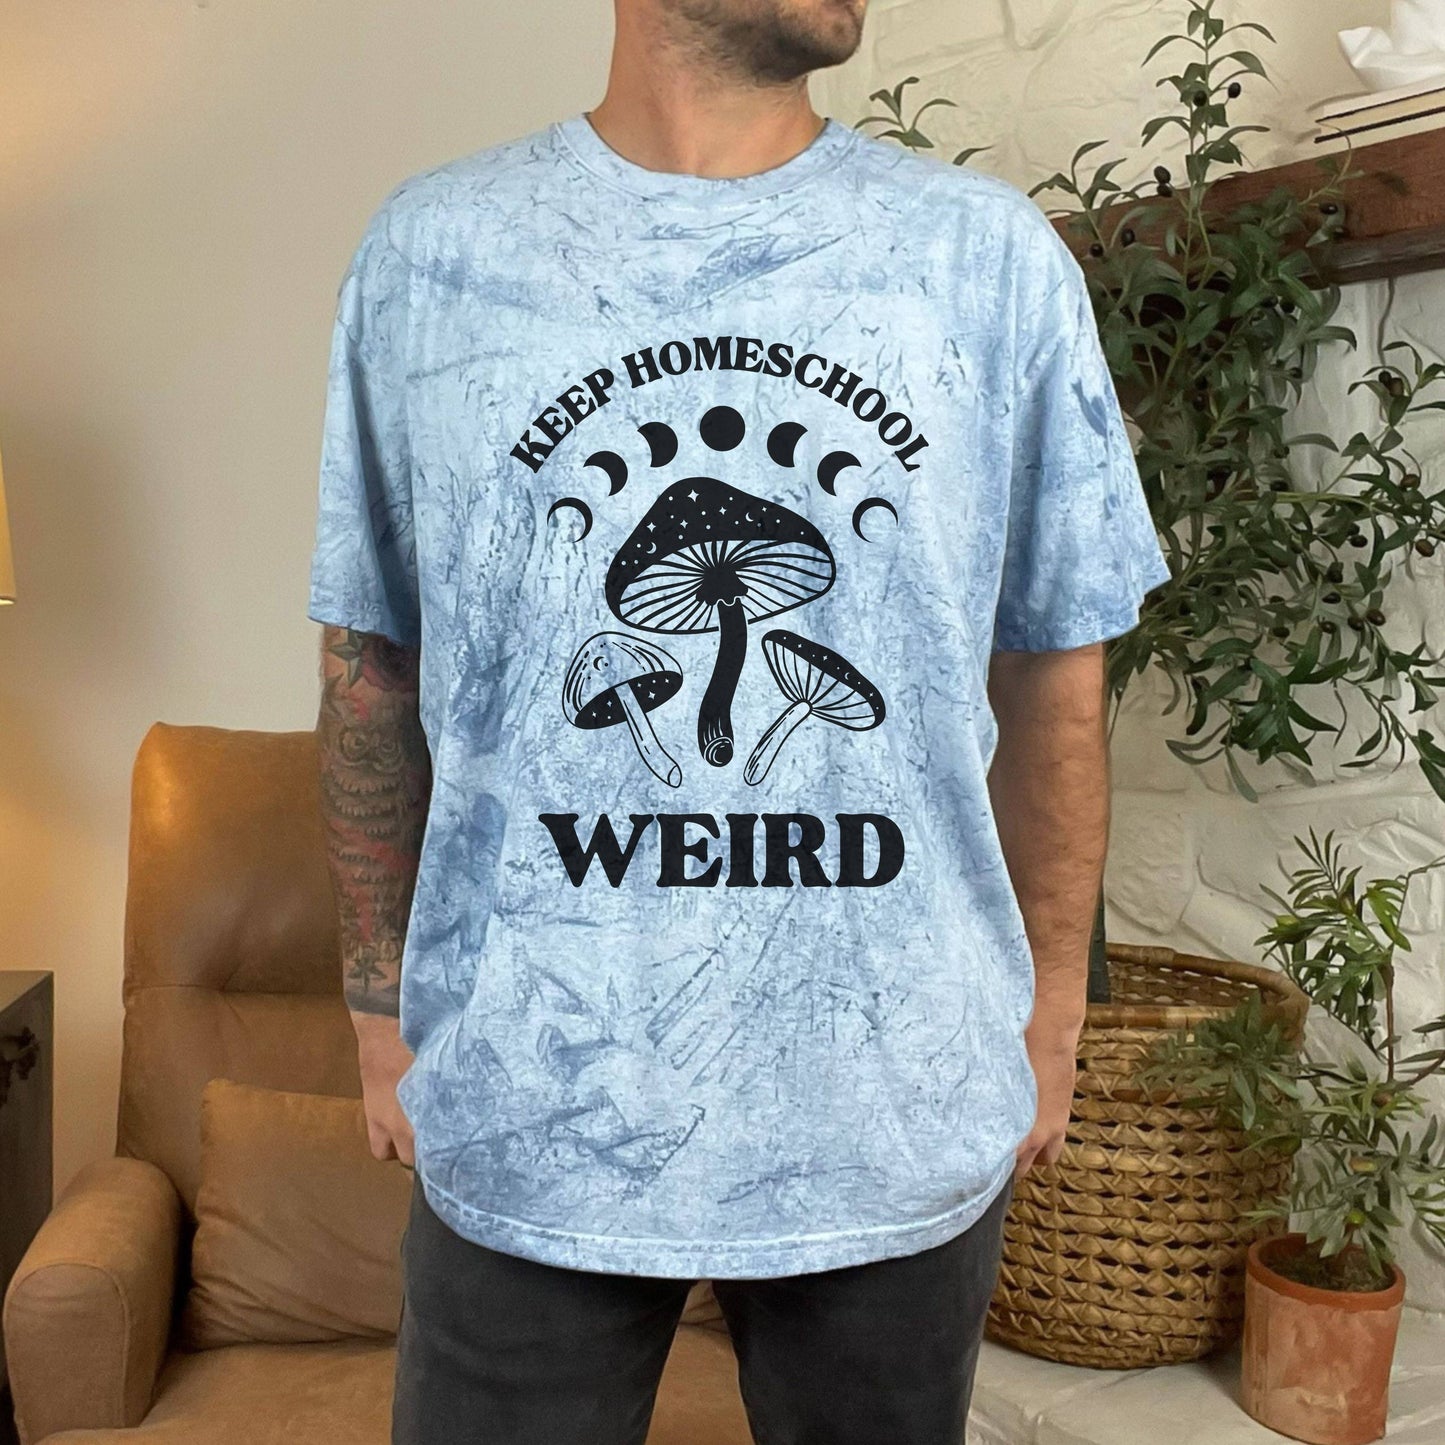 Copy of Keep Homeschool Weird Color Blast T-Shirt